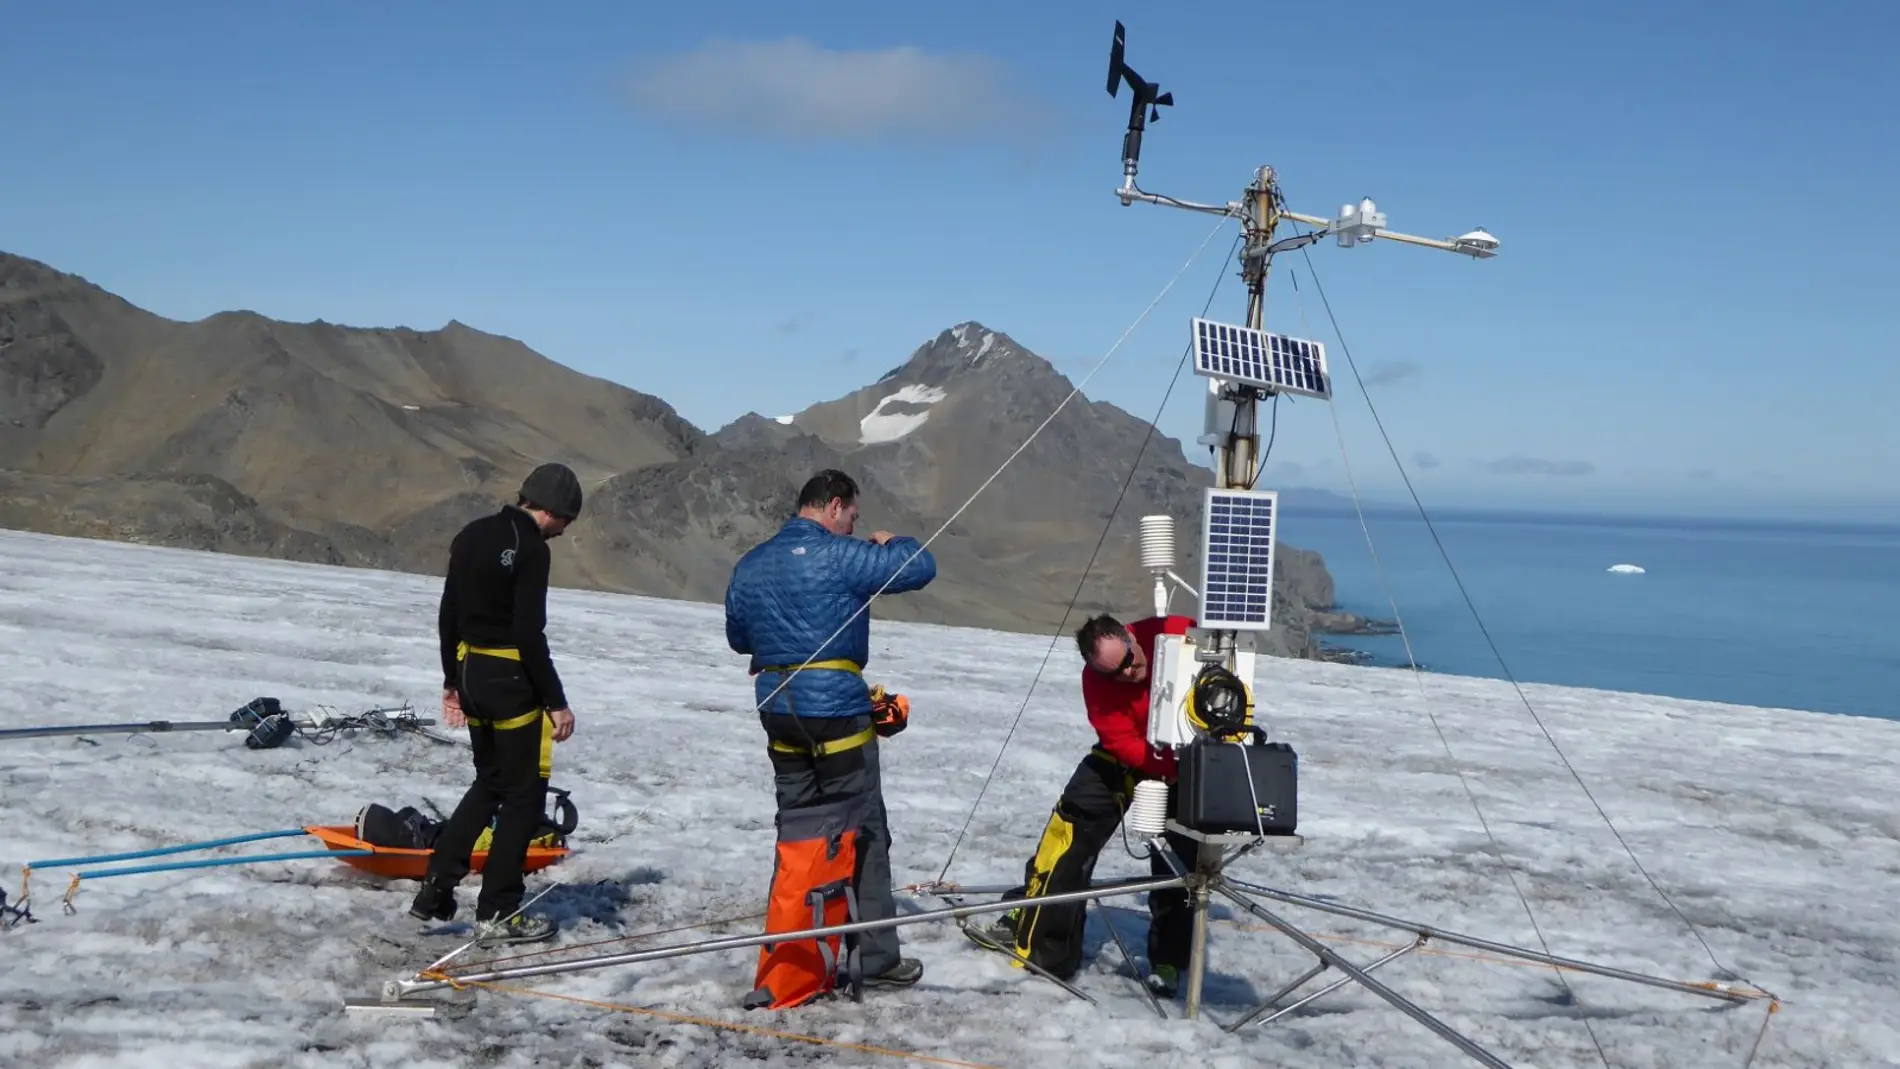 Finaliza un verano con temperaturas record en la Antartida